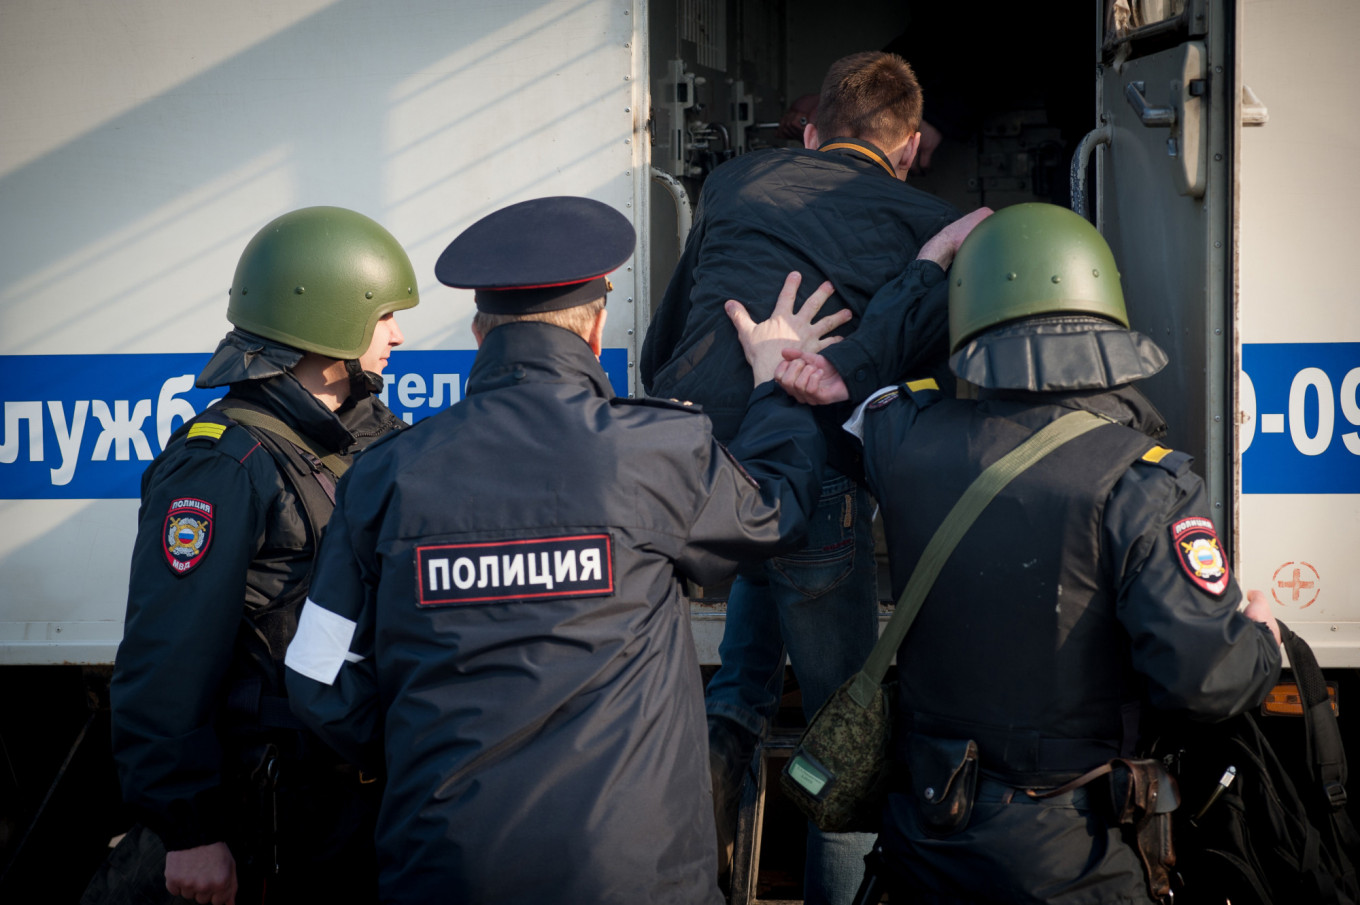 Navalny, Khodorkovsky Aides Jailed After Violent Arrests